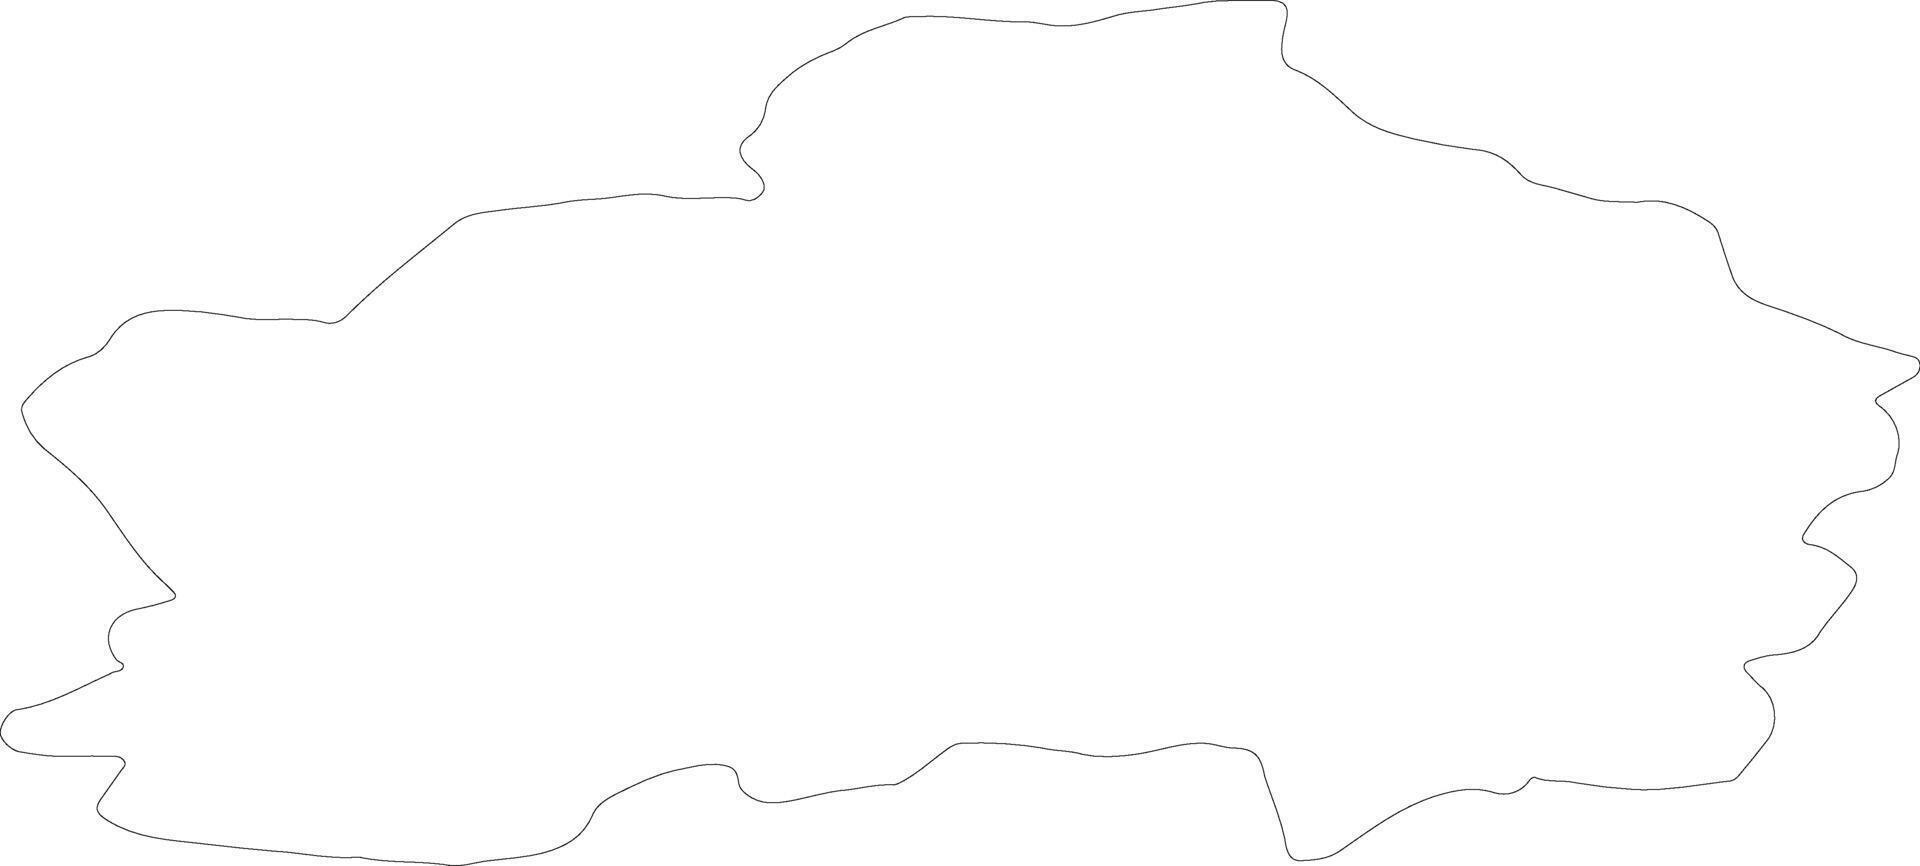 rapla Estonia schema carta geografica vettore